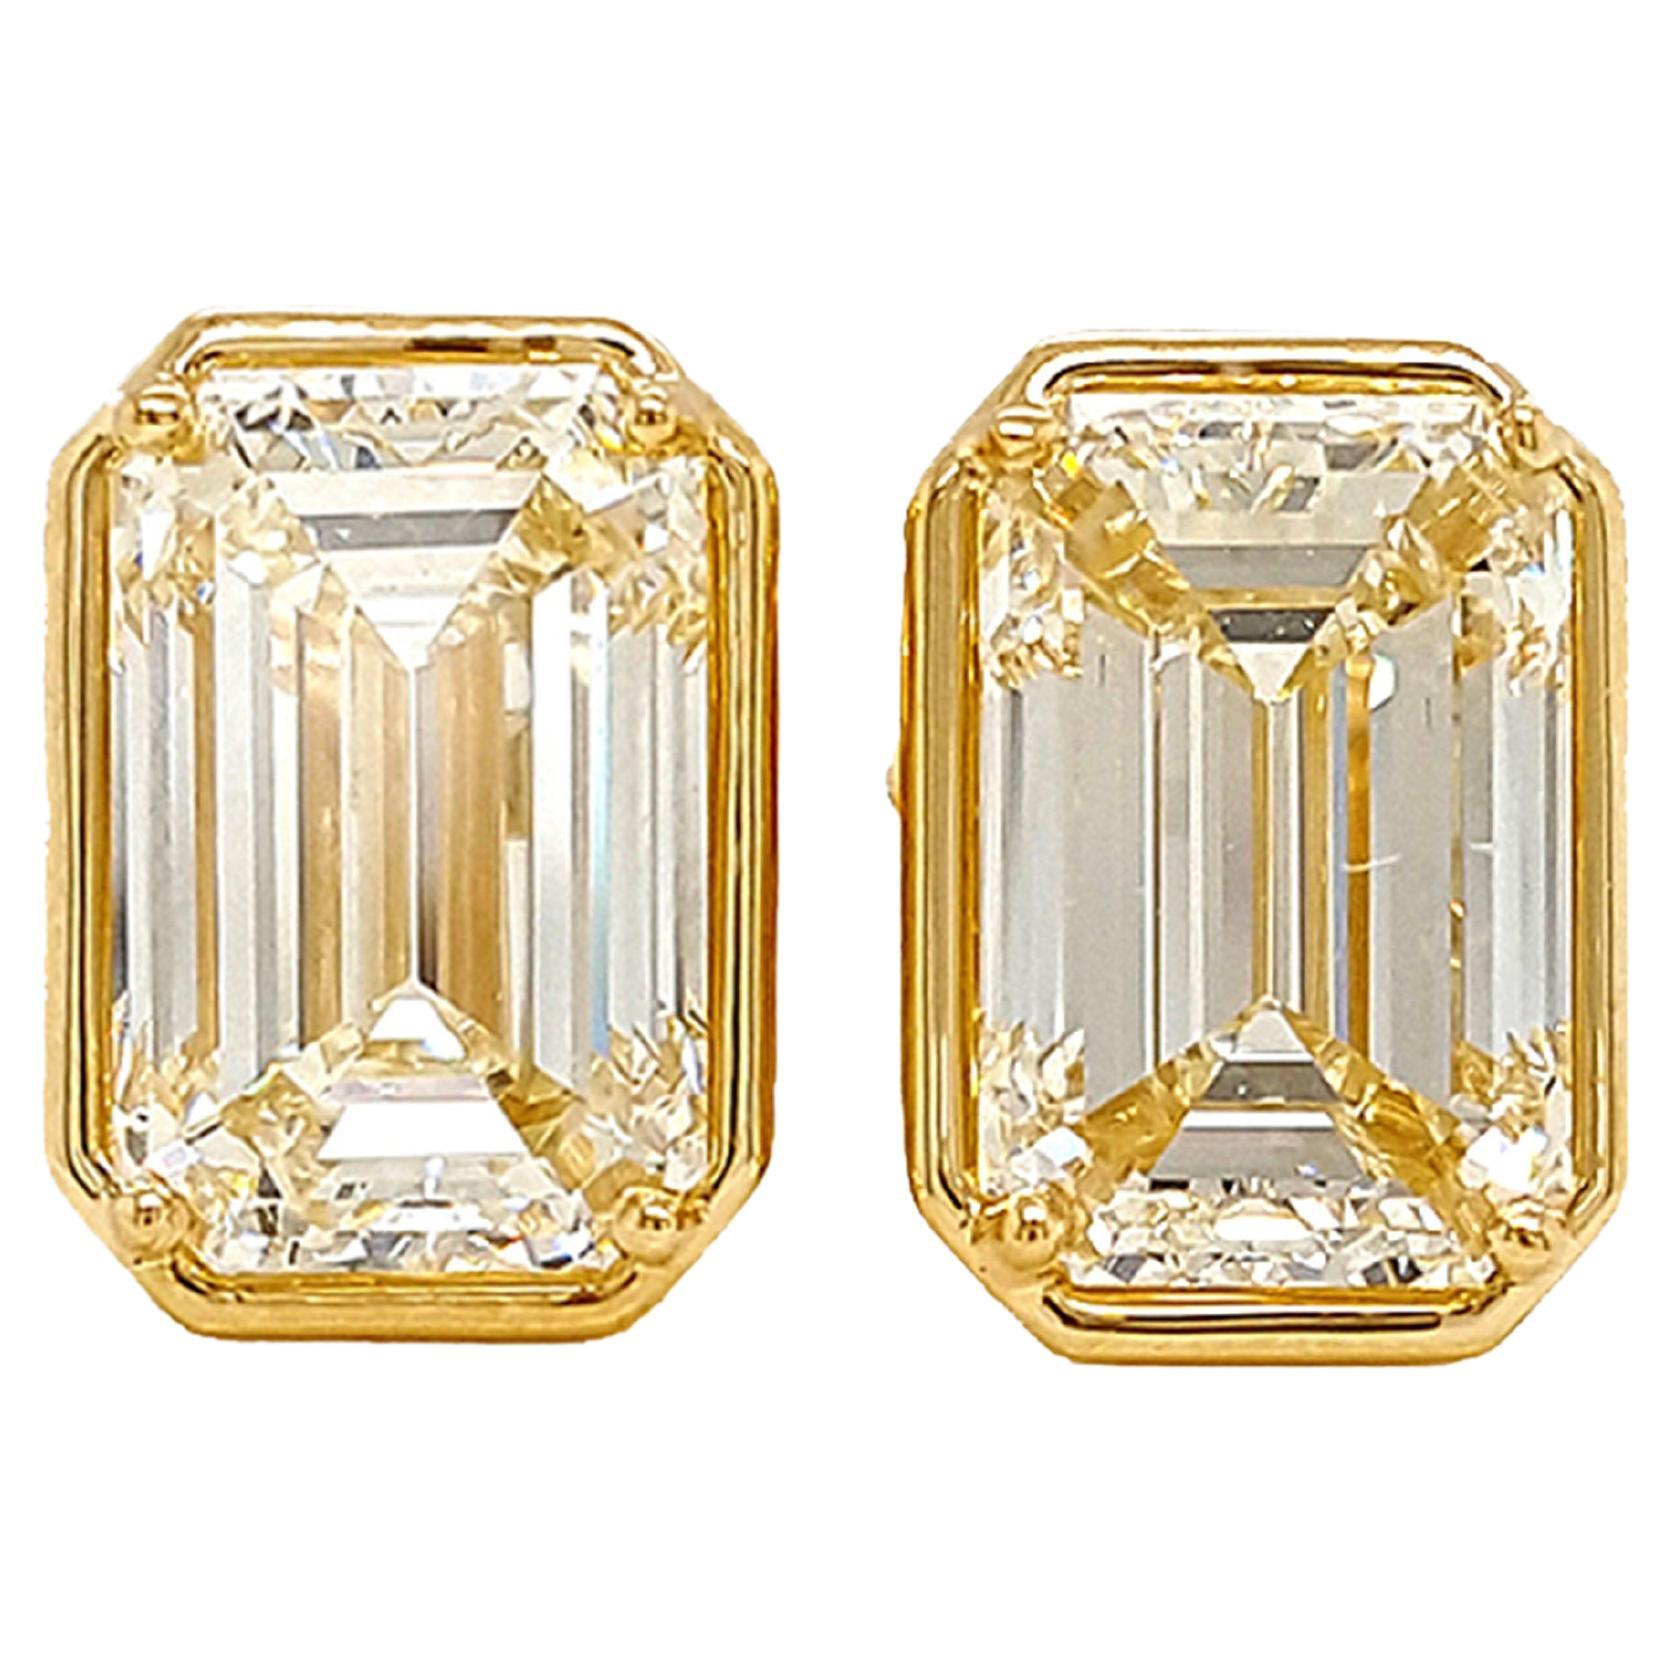 10 Carat Emerald Cut Diamond Stud Earrings Set in 18k Gold Bezel, GIA Certified